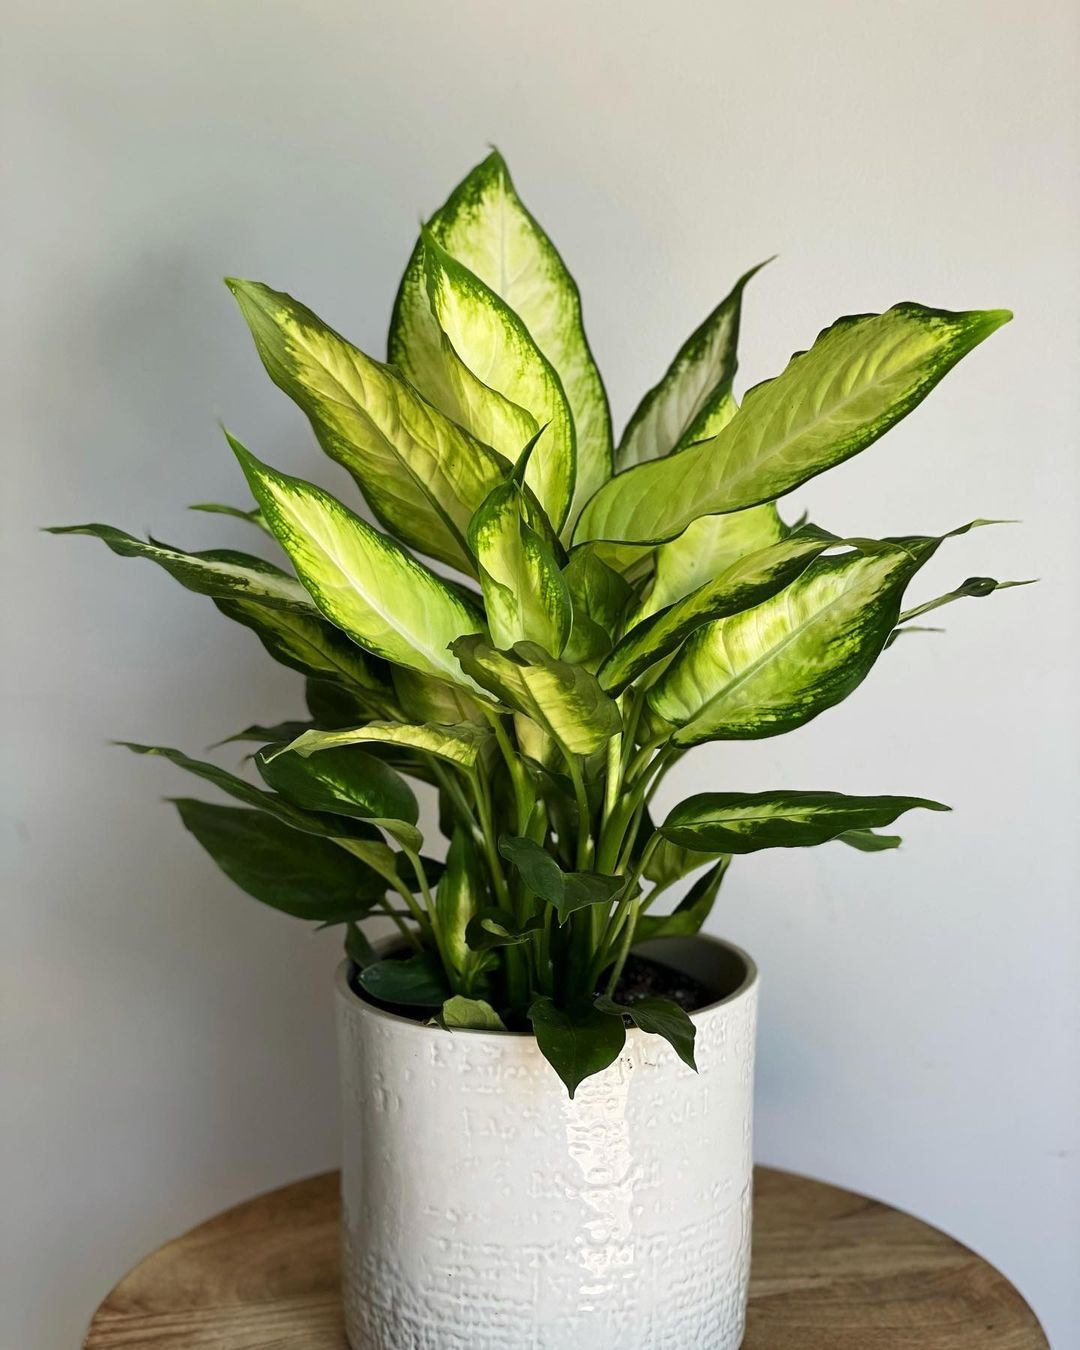 A white pot with a green Dieffenbachia plant.